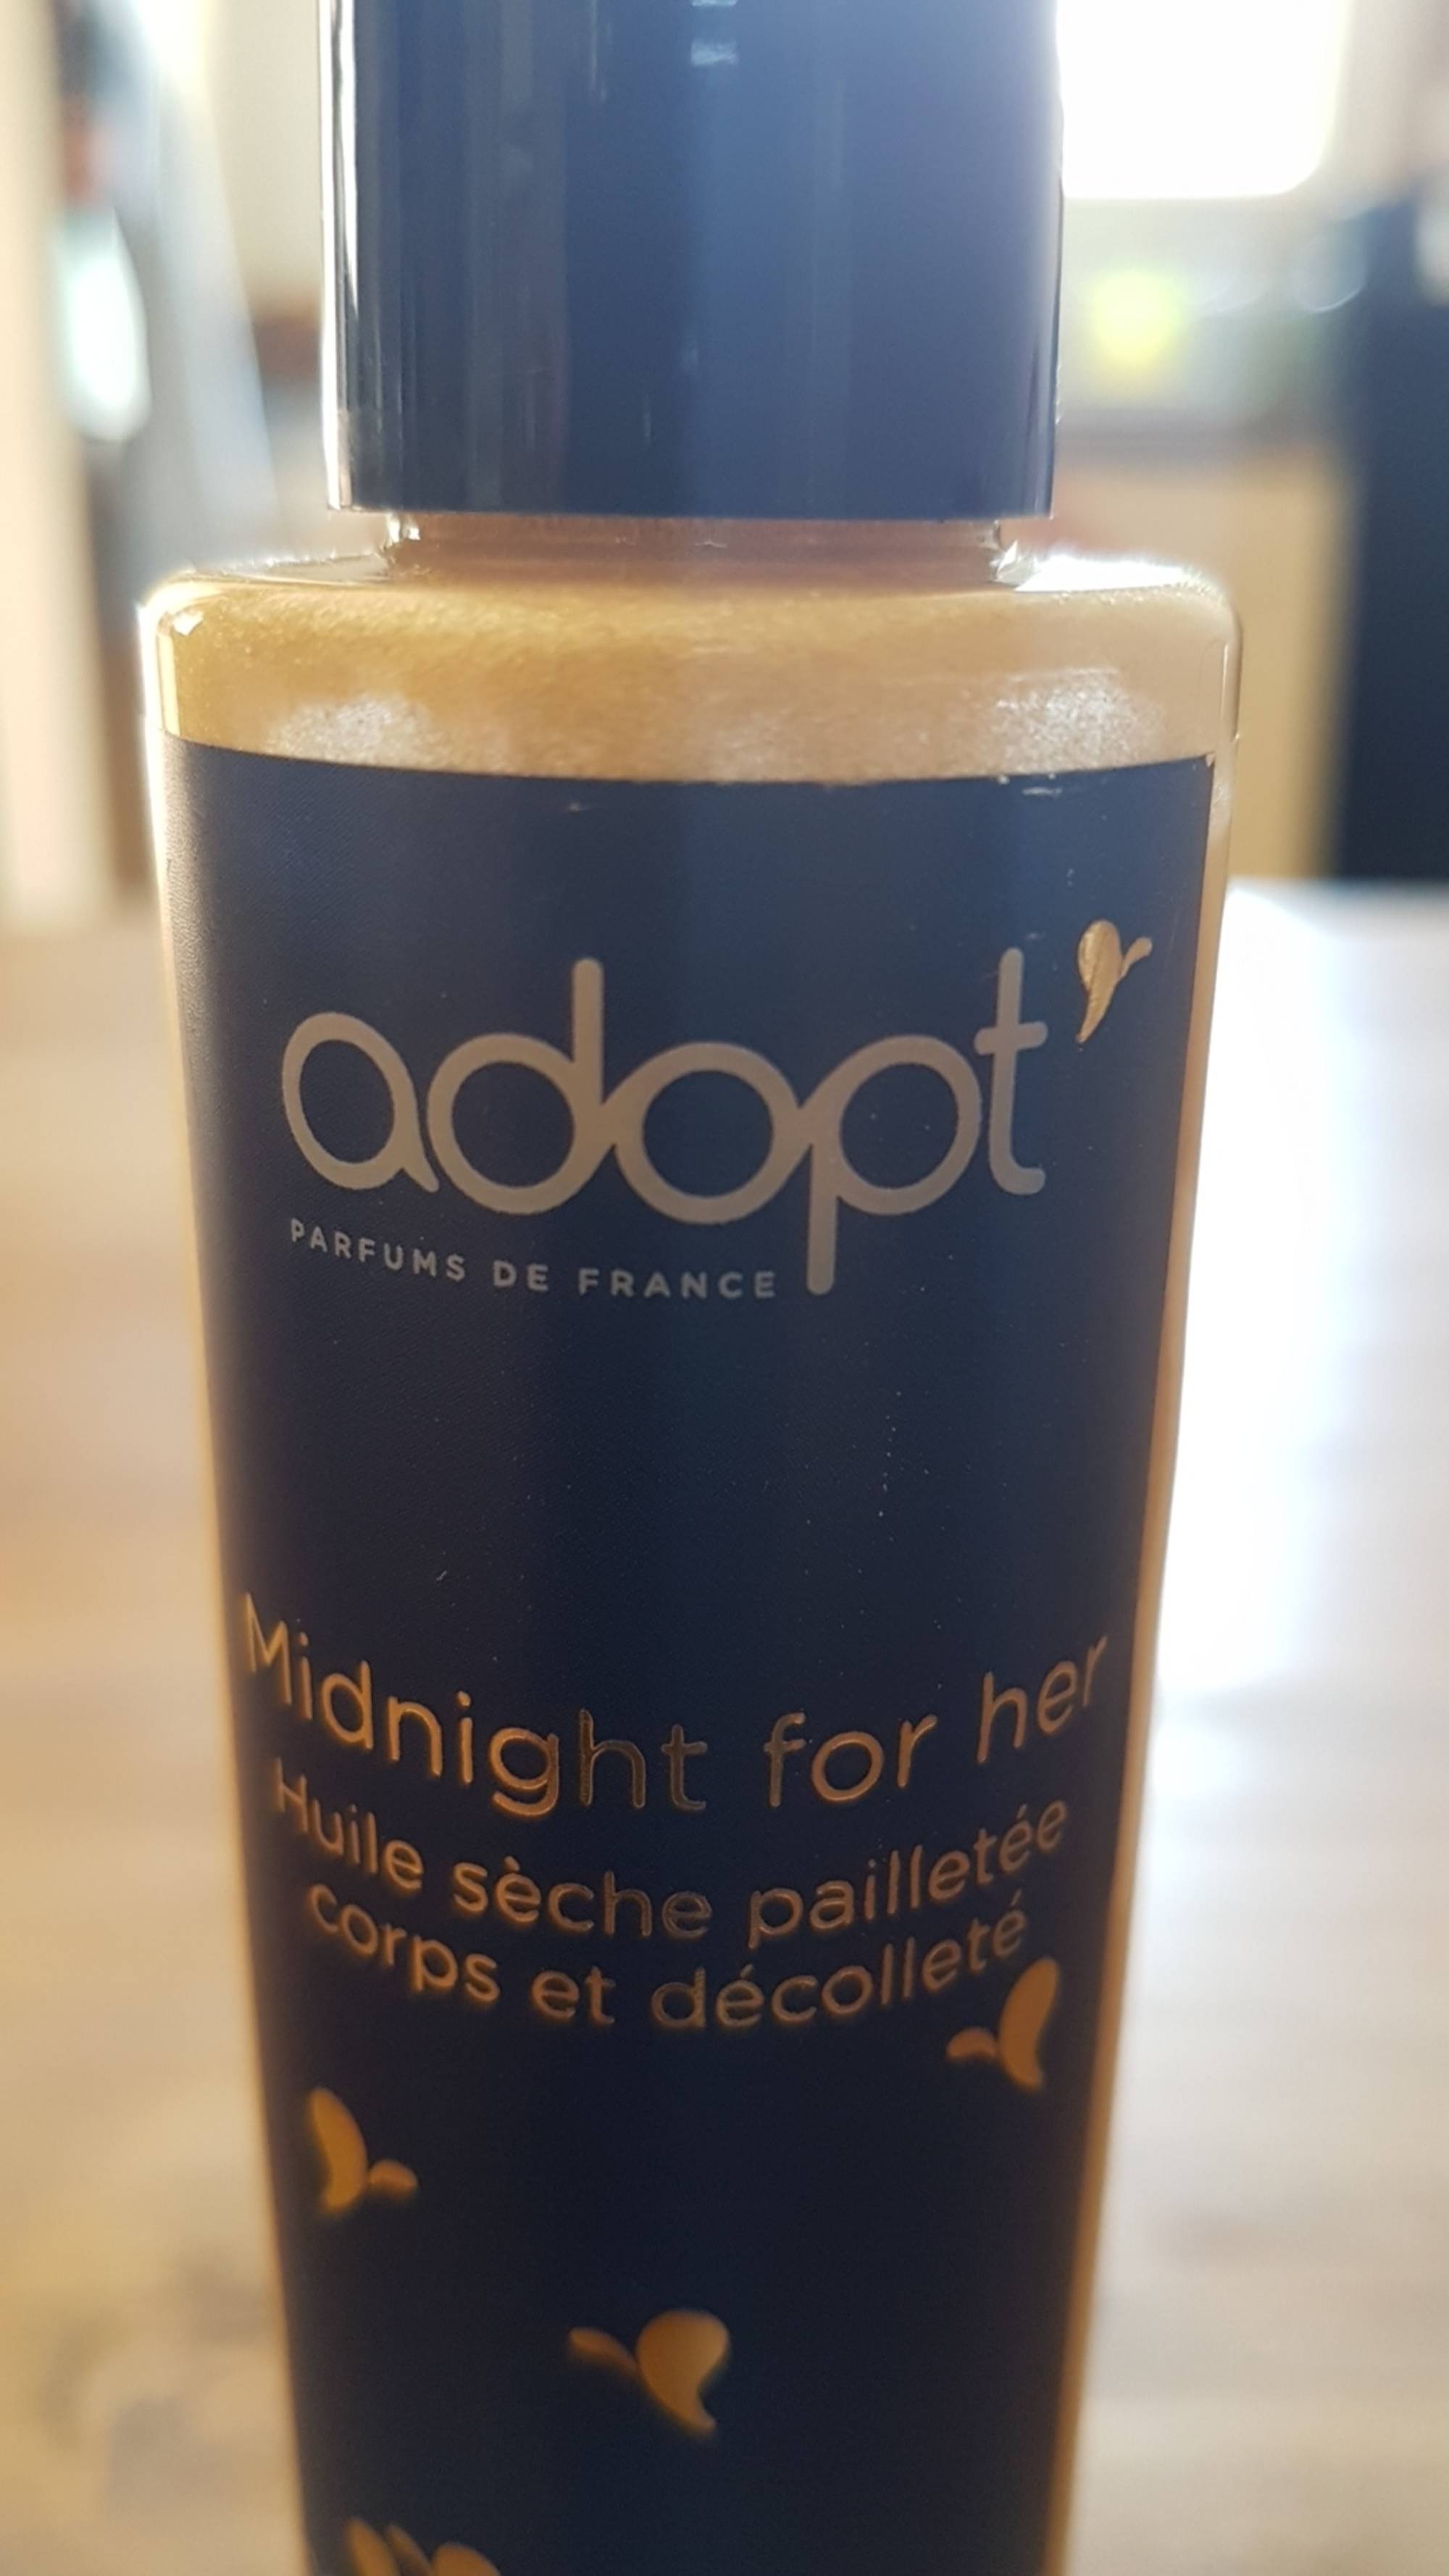 ADOPT' - Midnight for her - Huile sèche pailletée corps et décolleté